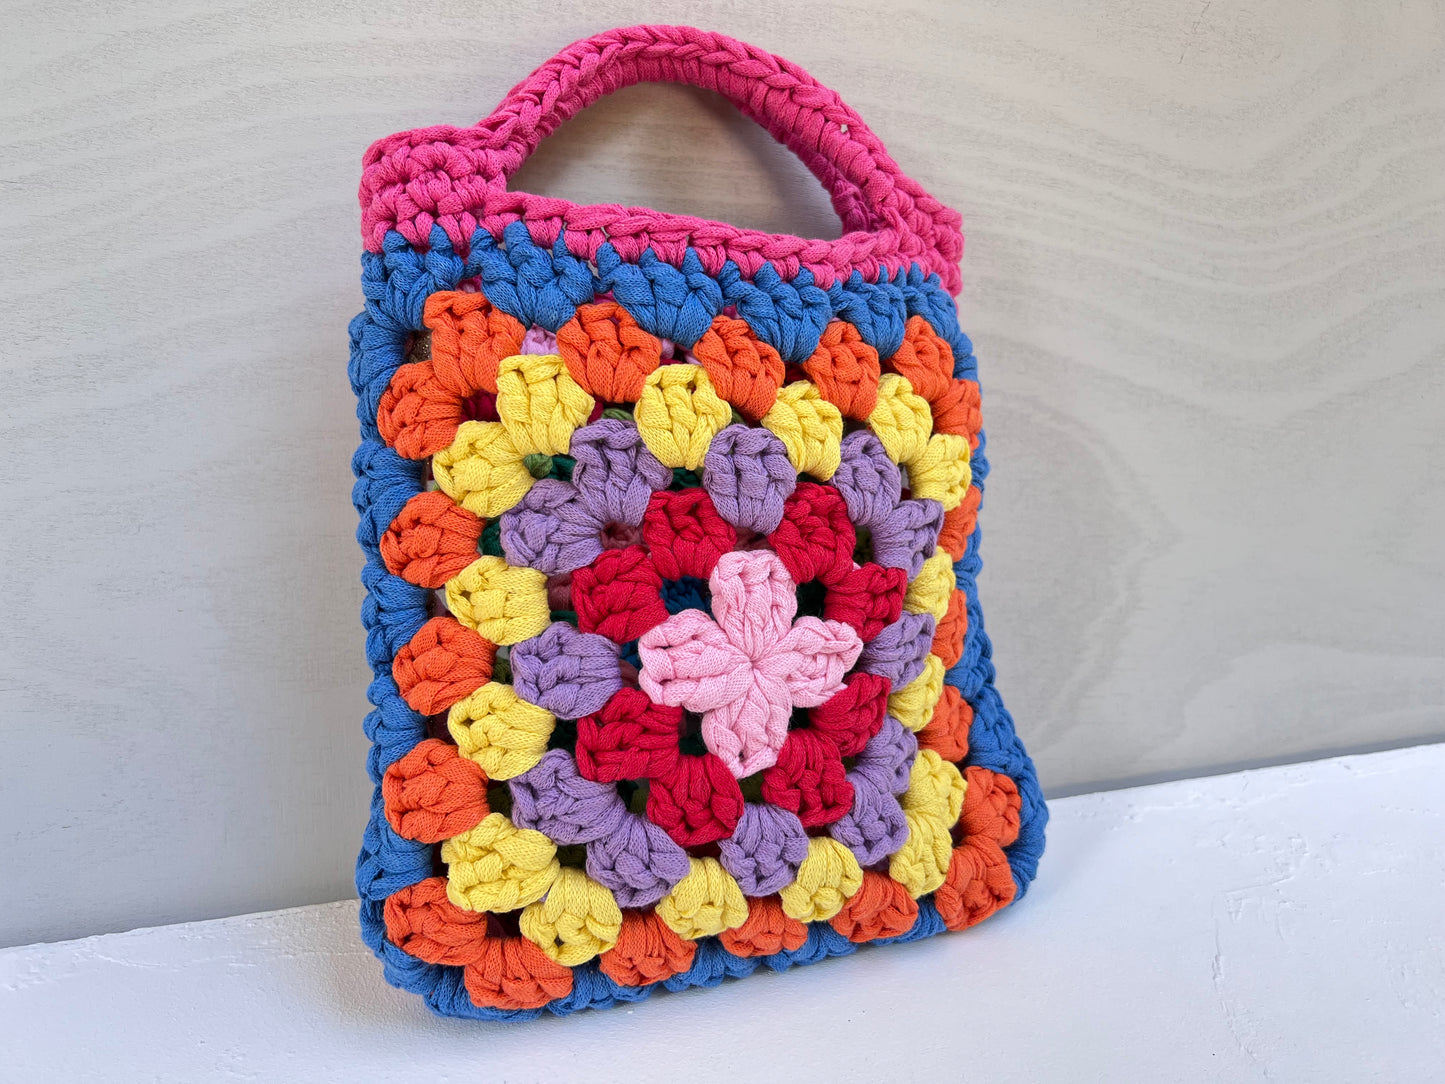 Crocheted colourful granny square tote purse